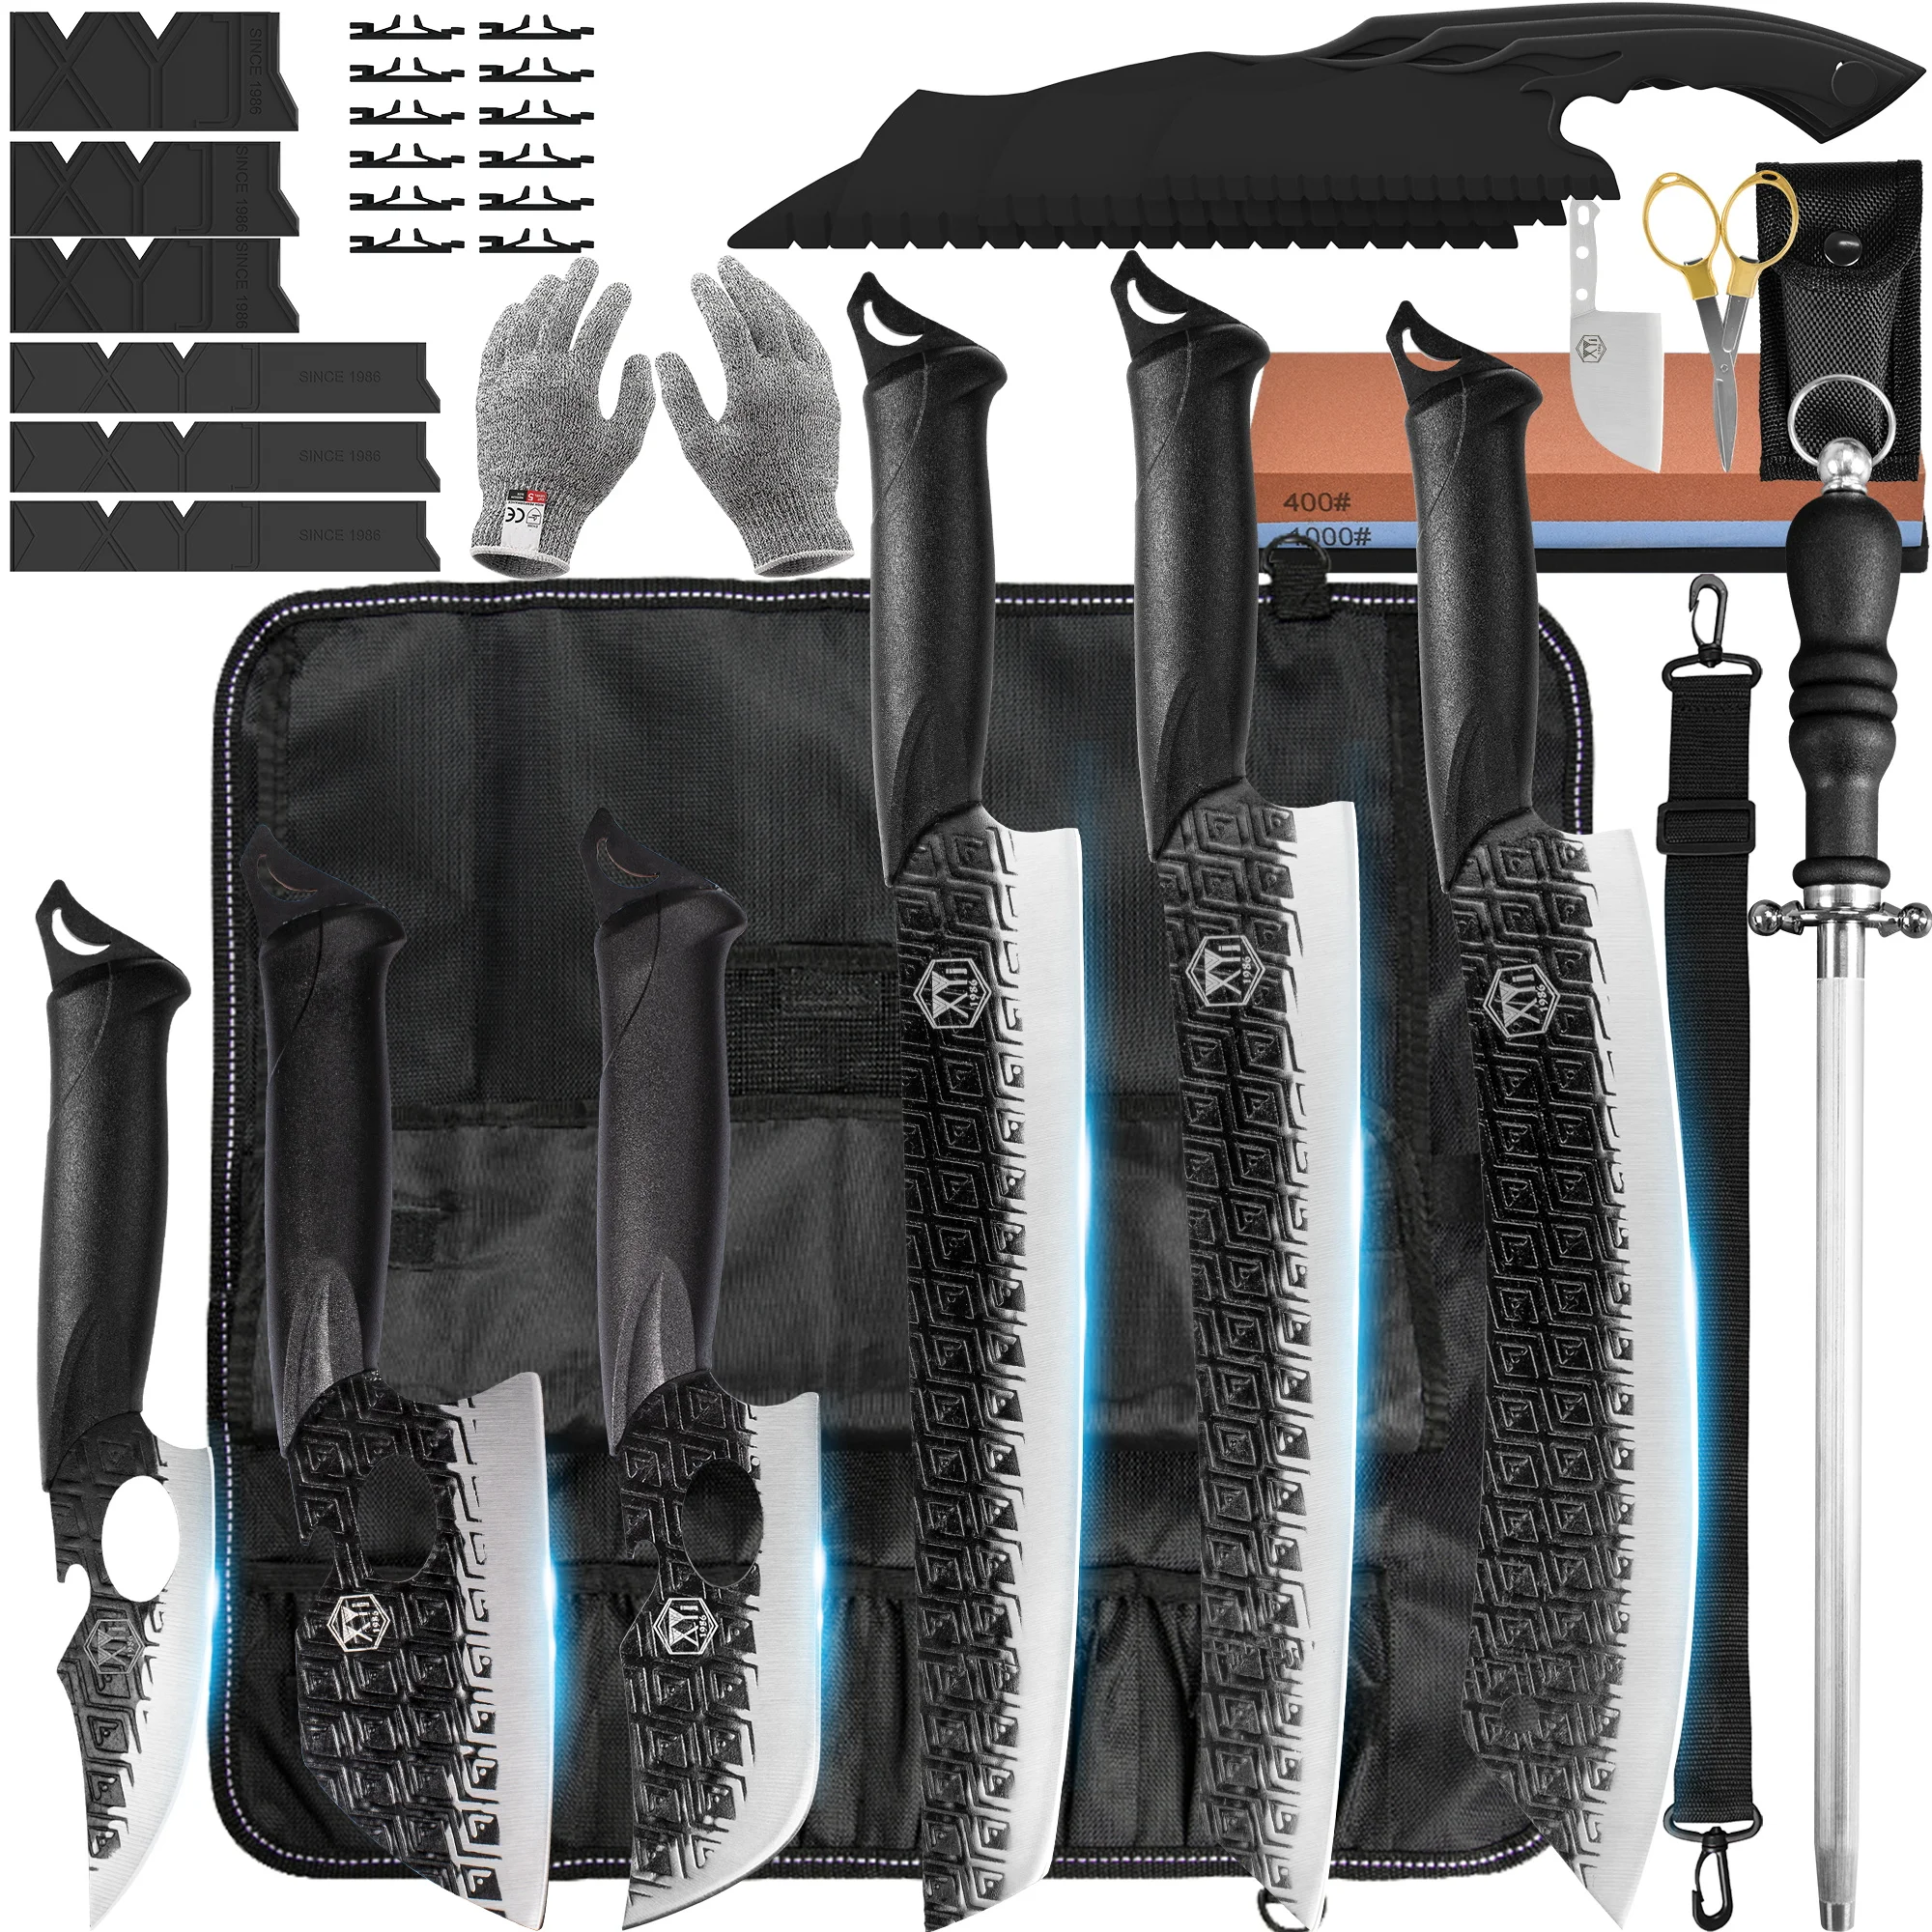 

Набор кухонных ножей XYj из нержавеющей стали, острые лезвия, пластиковая ручка, набор инструментов для шеф-повара, точильный камень, рулон, ножницы, подарочная упаковка